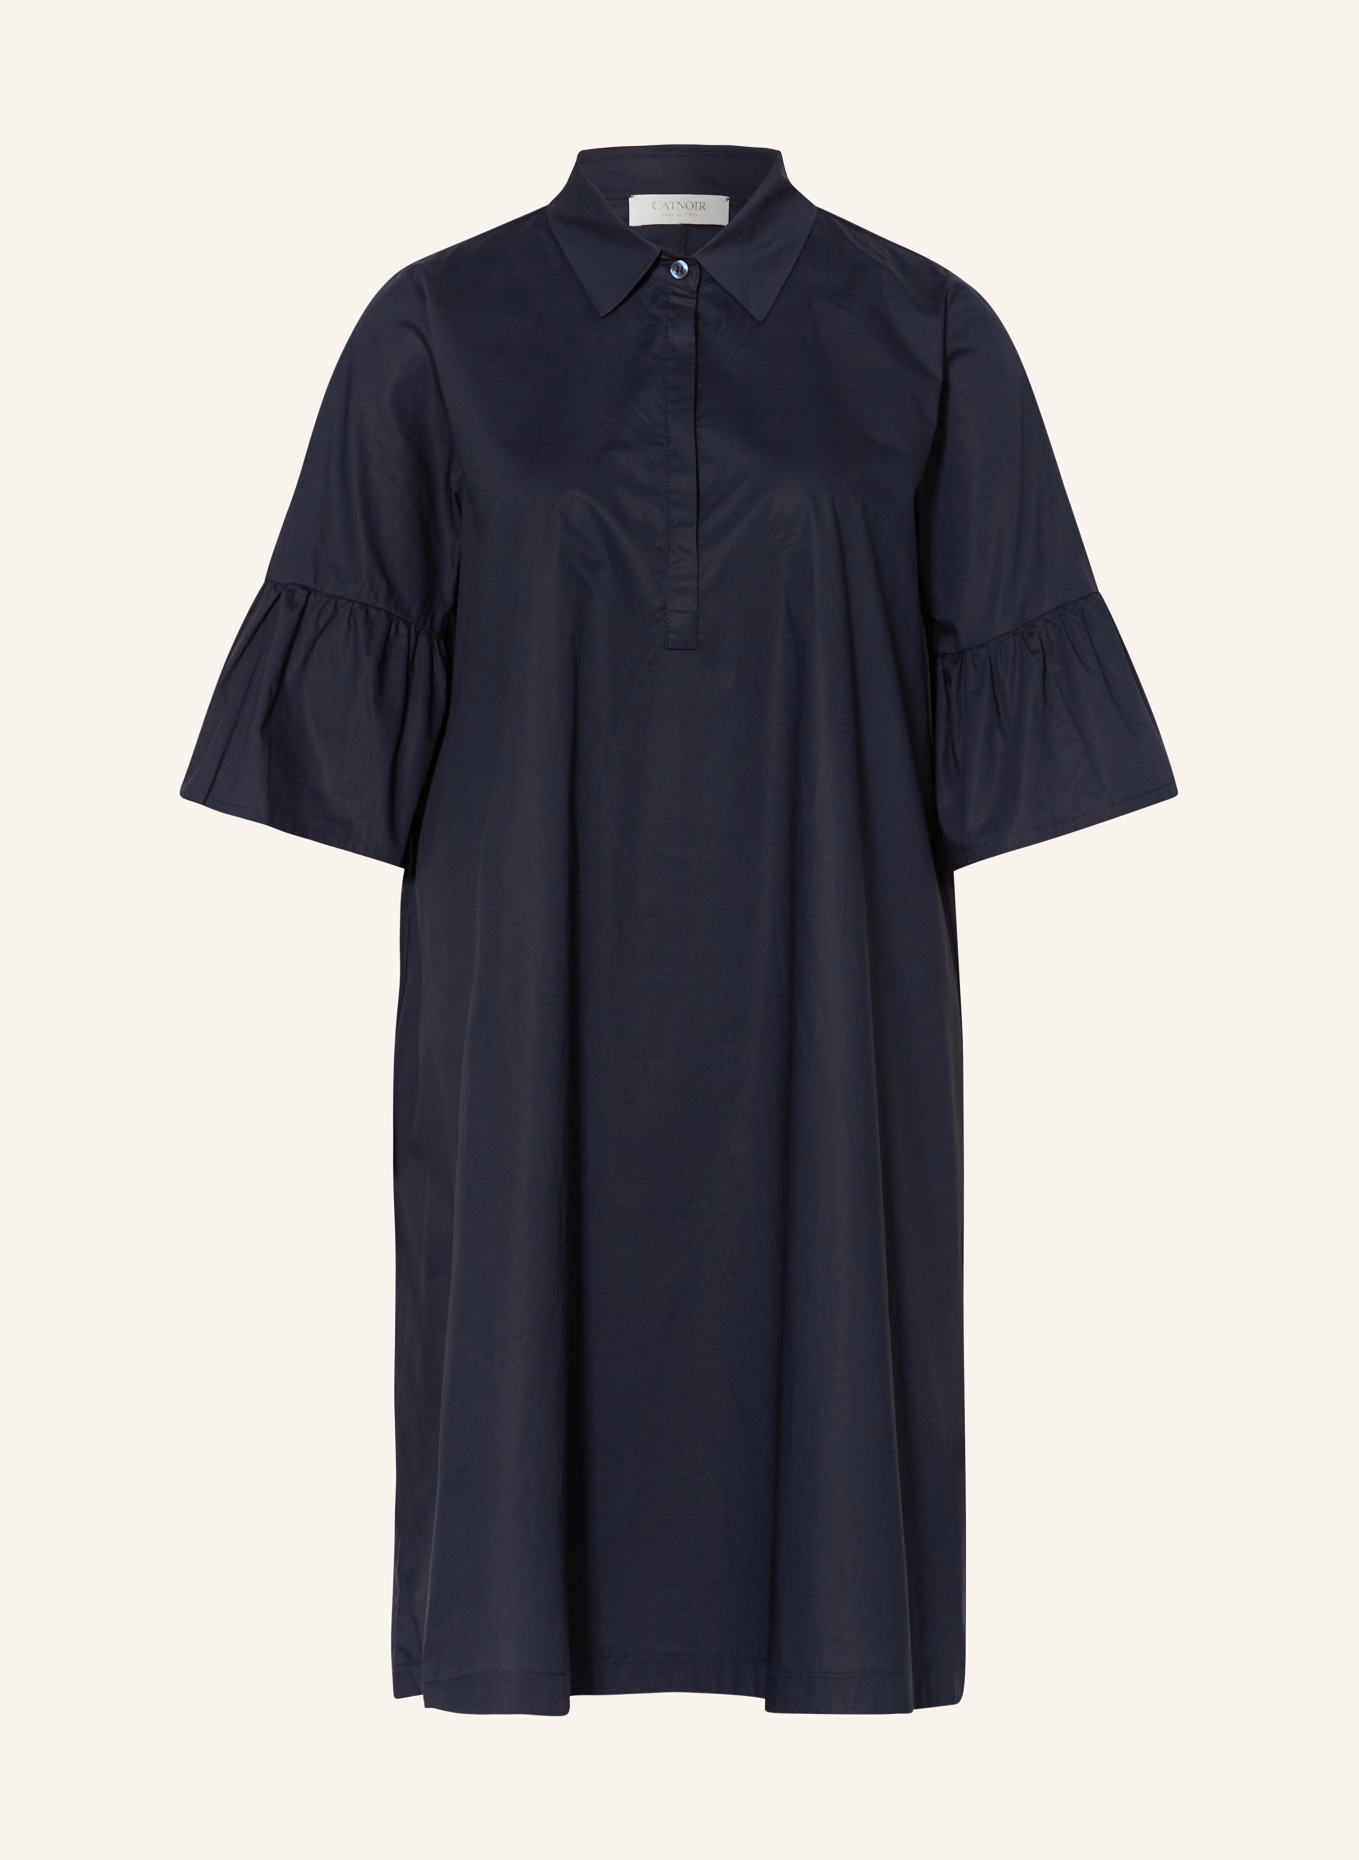 CATNOIR Kleid mit 3/4-Arm, Farbe: 69 NAVY (Bild 1)